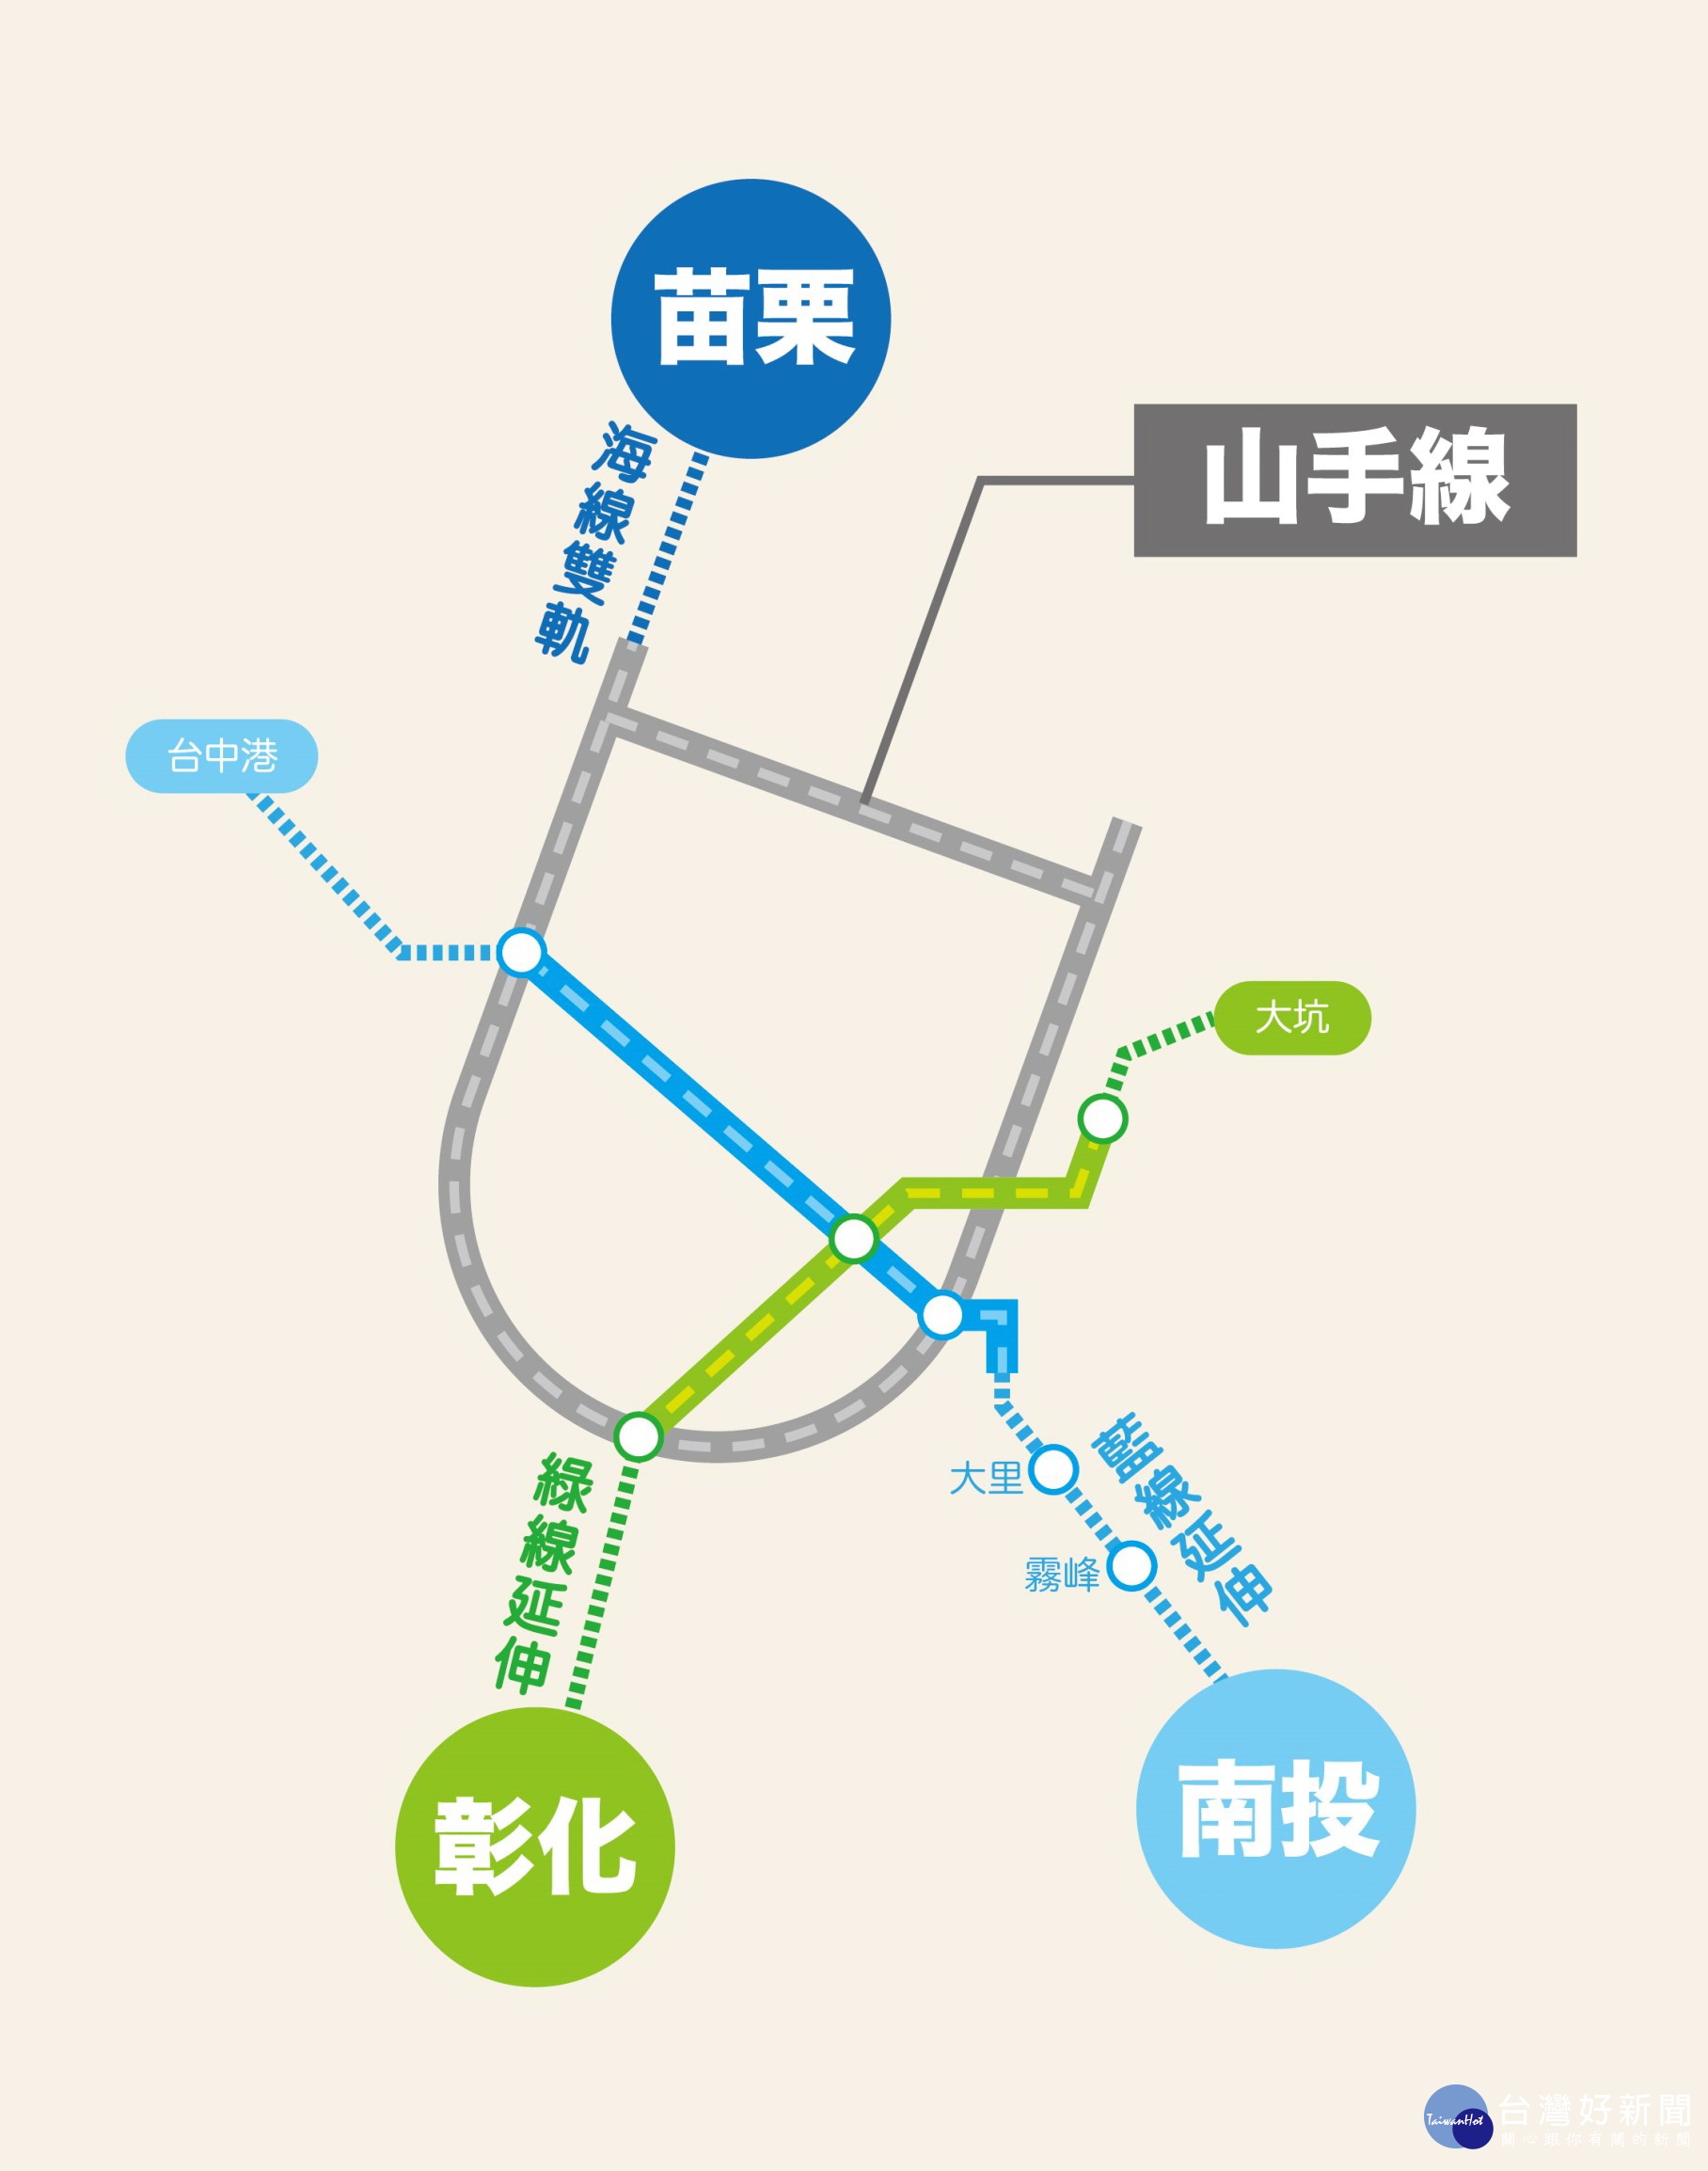 中台灣整體軌道建設藍圖